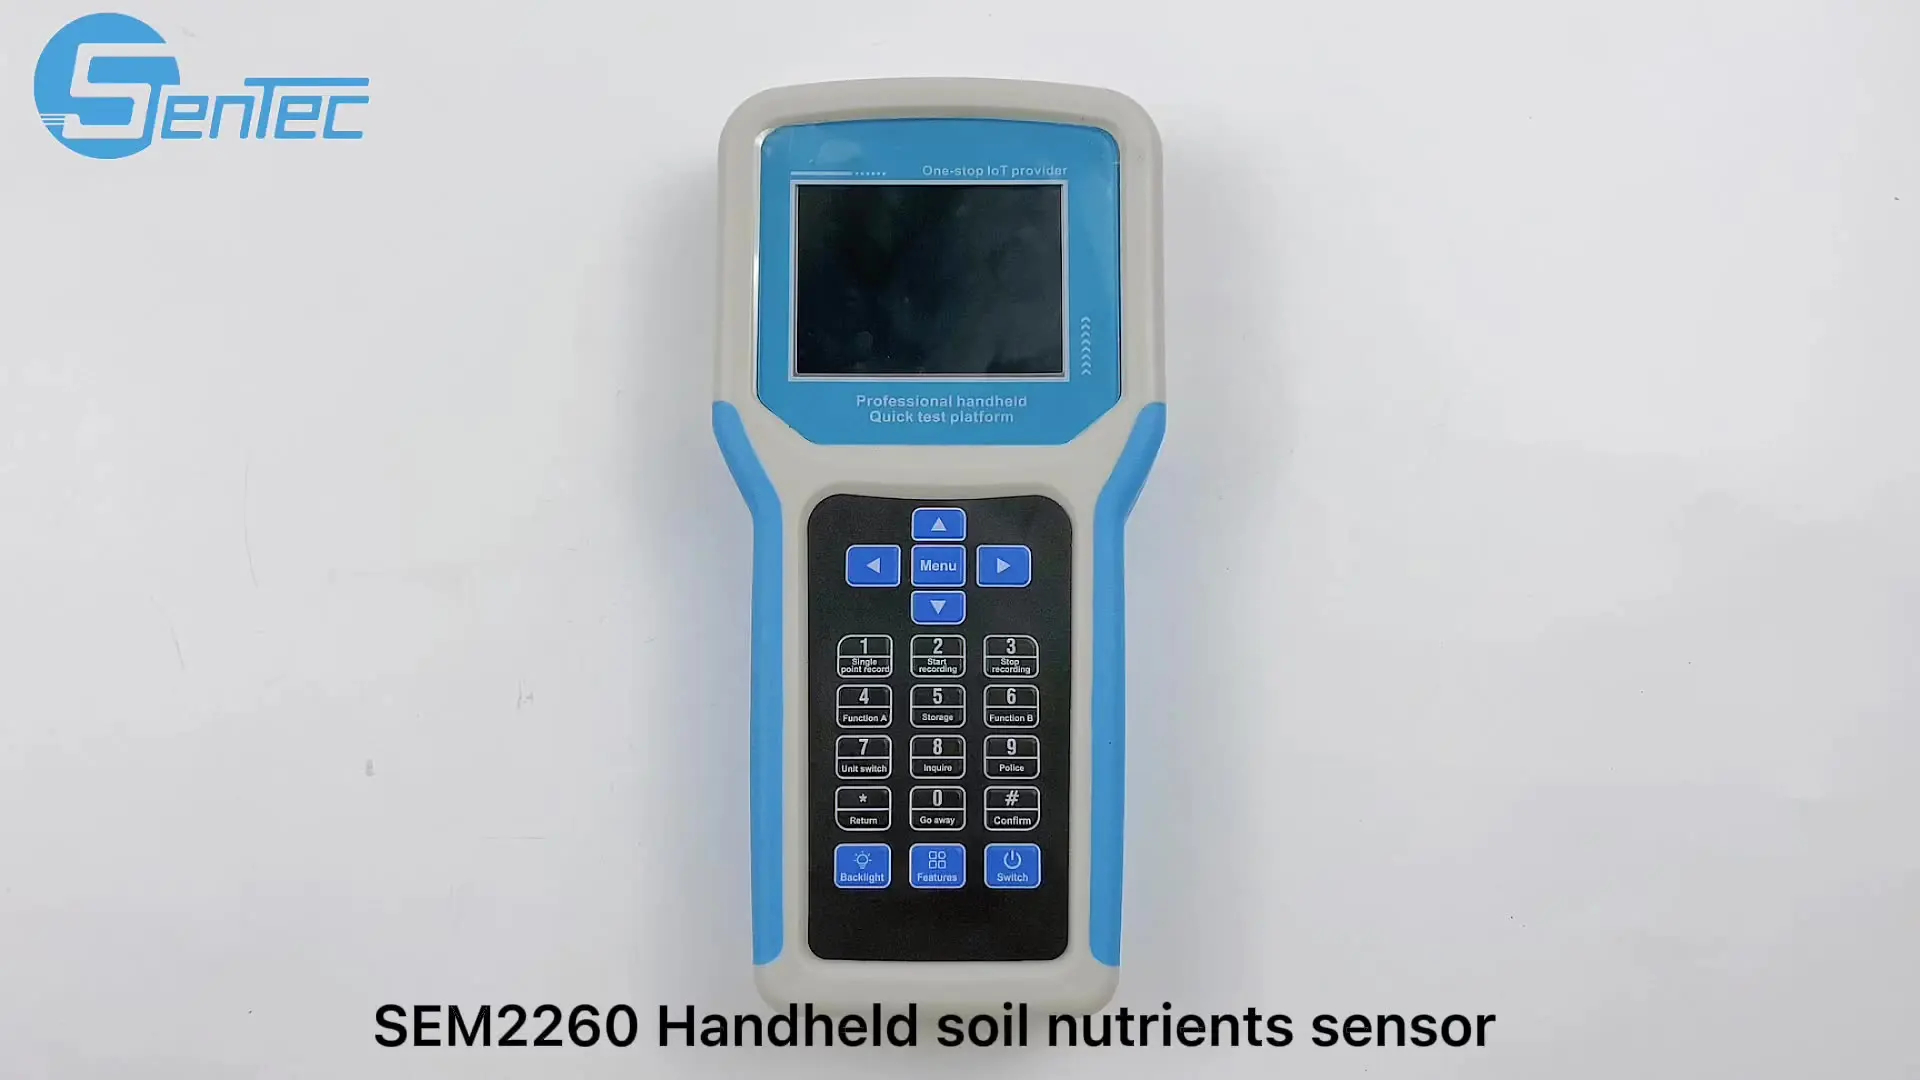 

Портативный детектор температуры почвы SEM2260, анализатор PH NPK